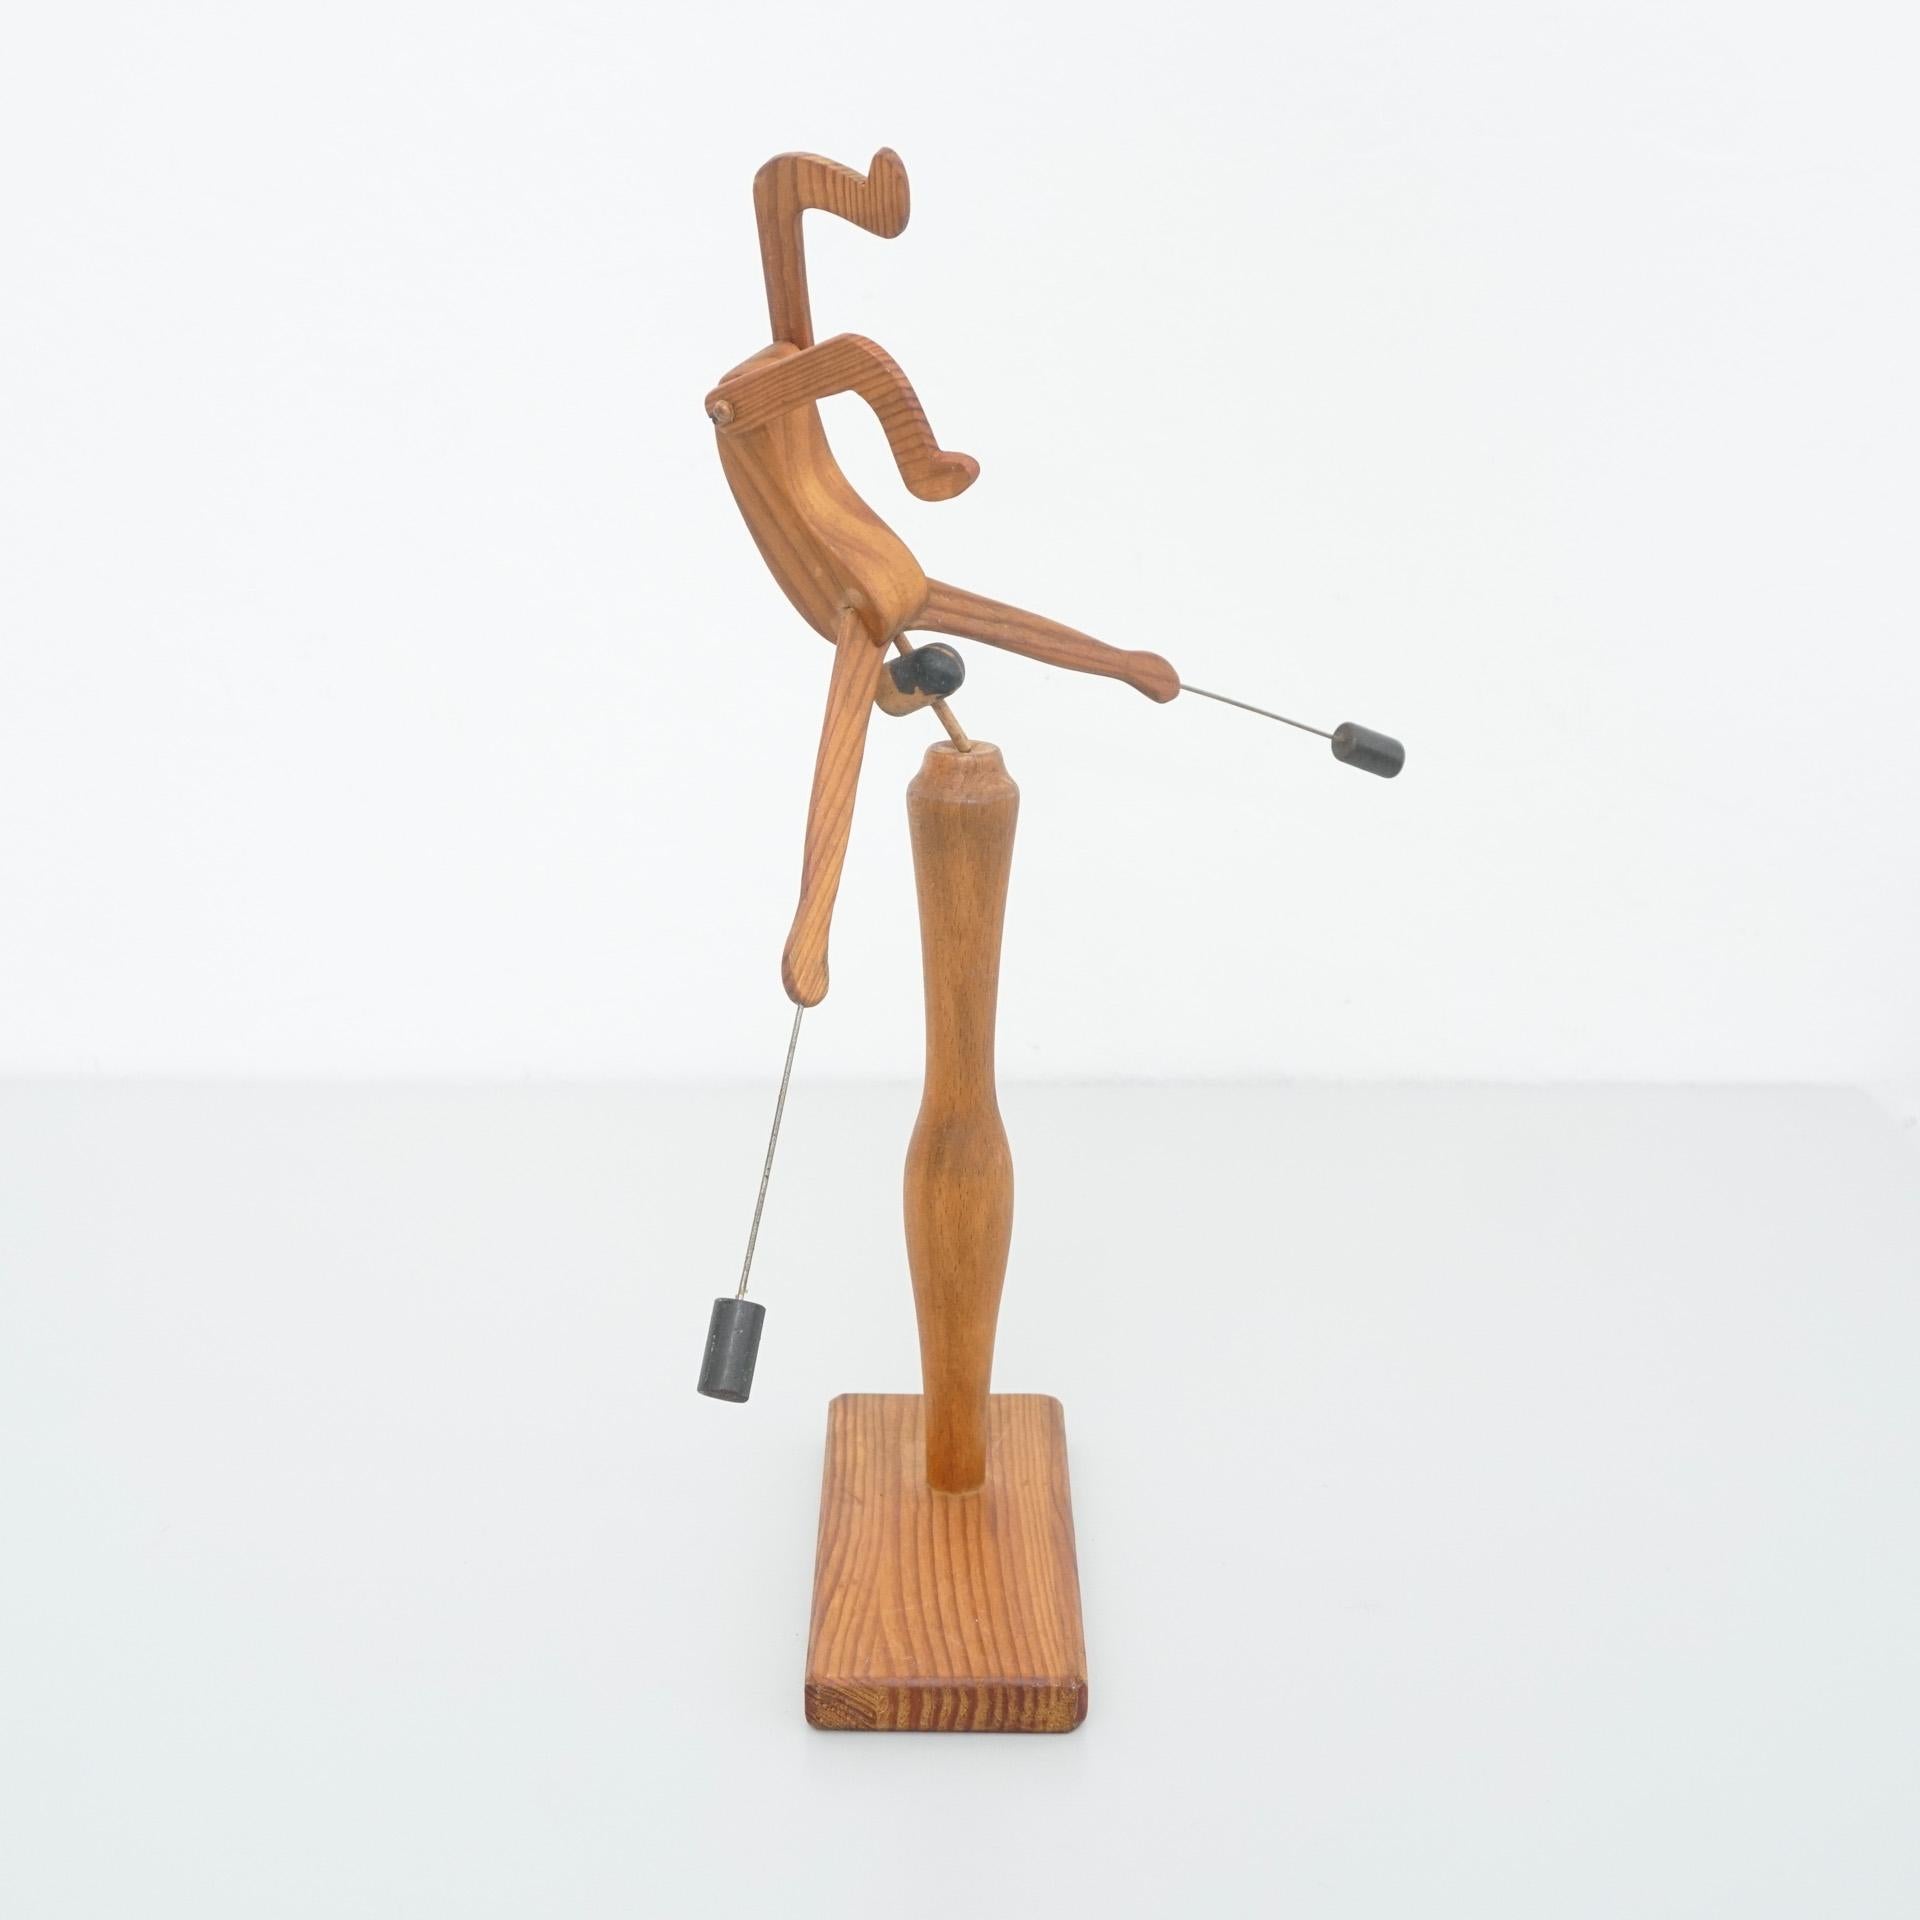 European D.Invernon Equilibrist Wood Sculpture, 2020